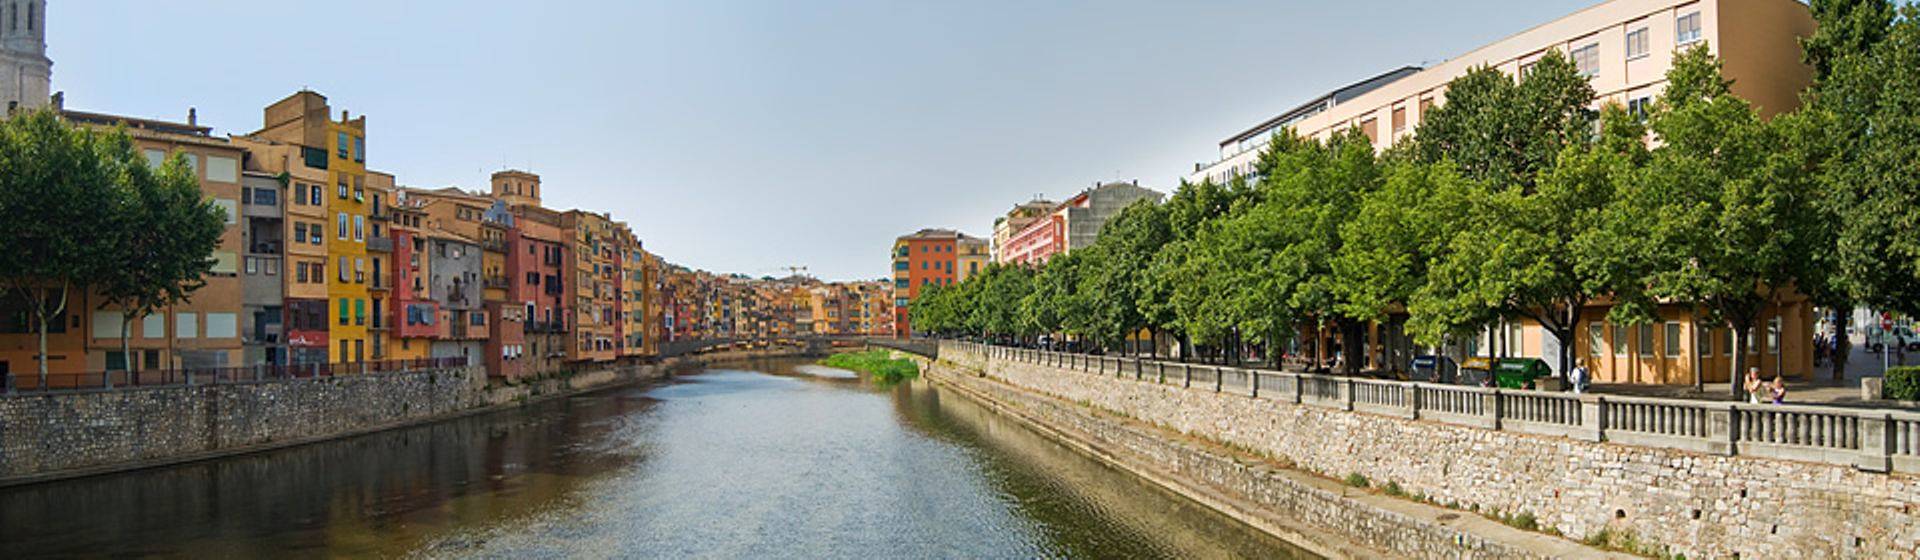 Holidays to Girona Image